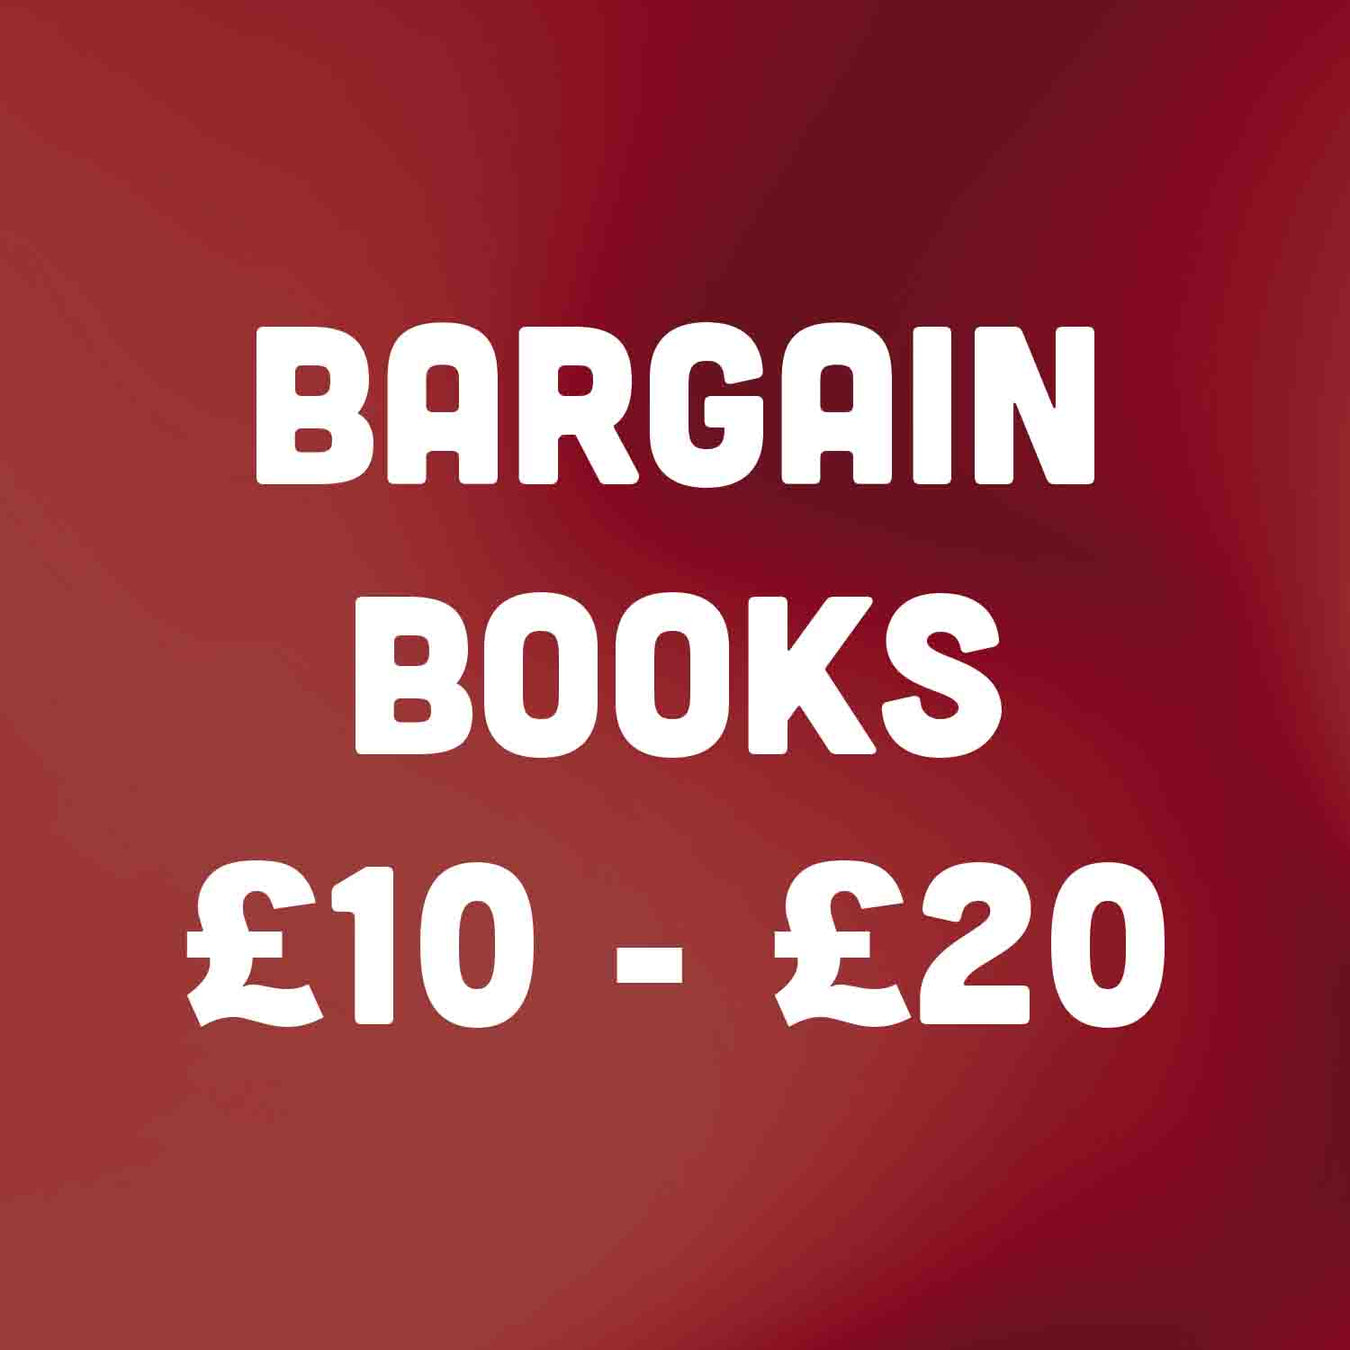 Bargain Books for £10 - £20